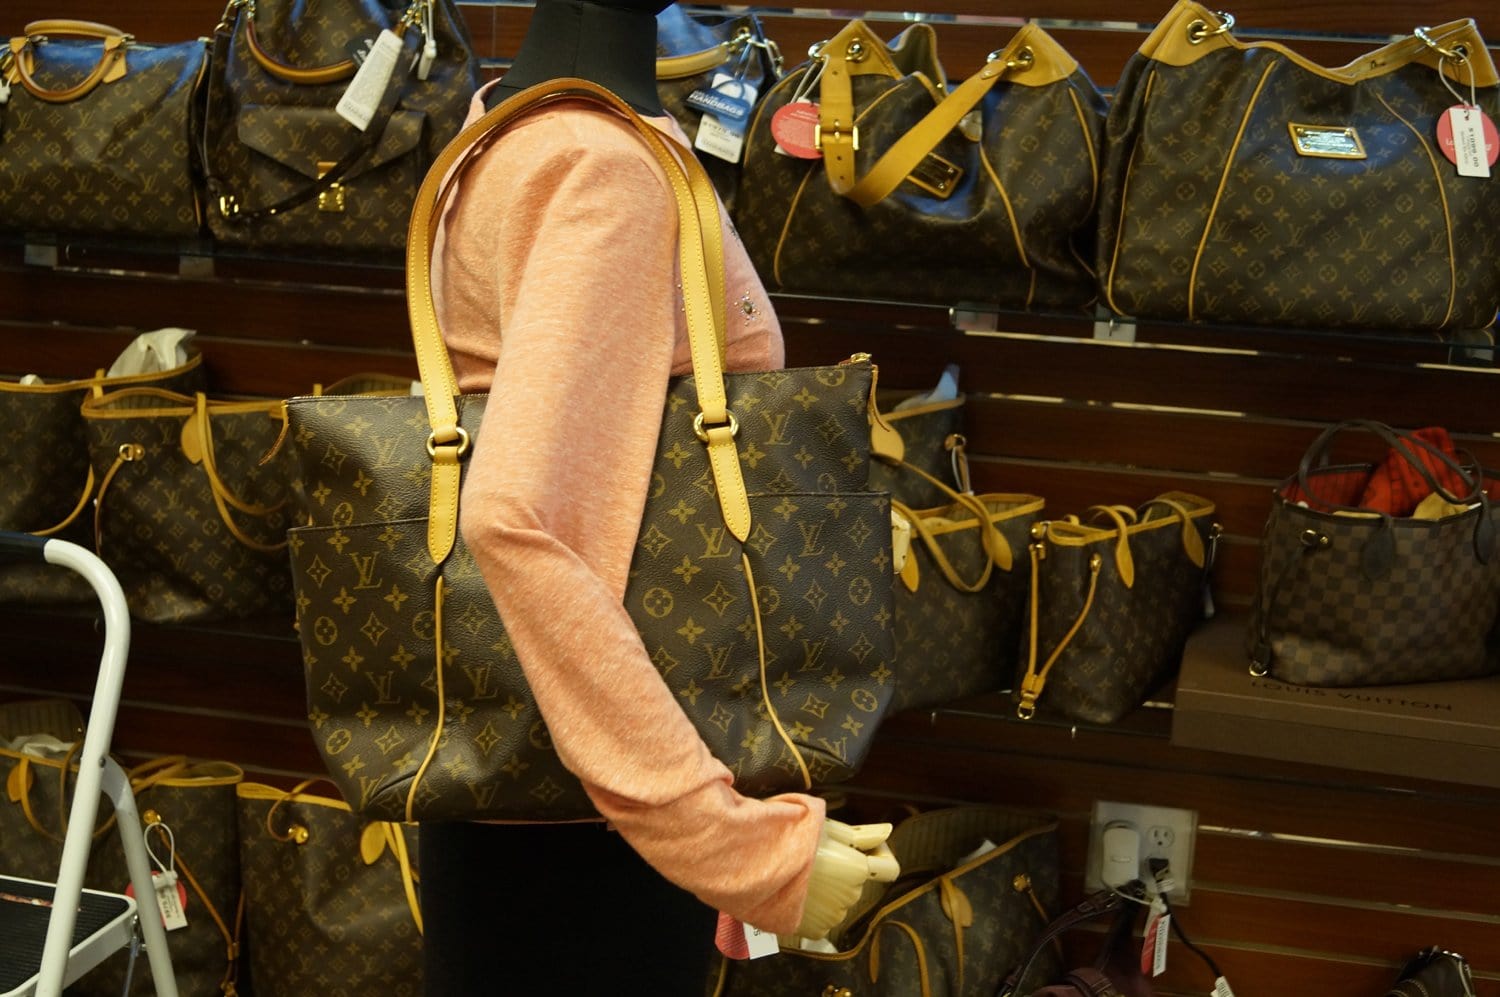 Louis Vu.itton Shopping Bag Shopping Bag Backpack Shoulder Bag 